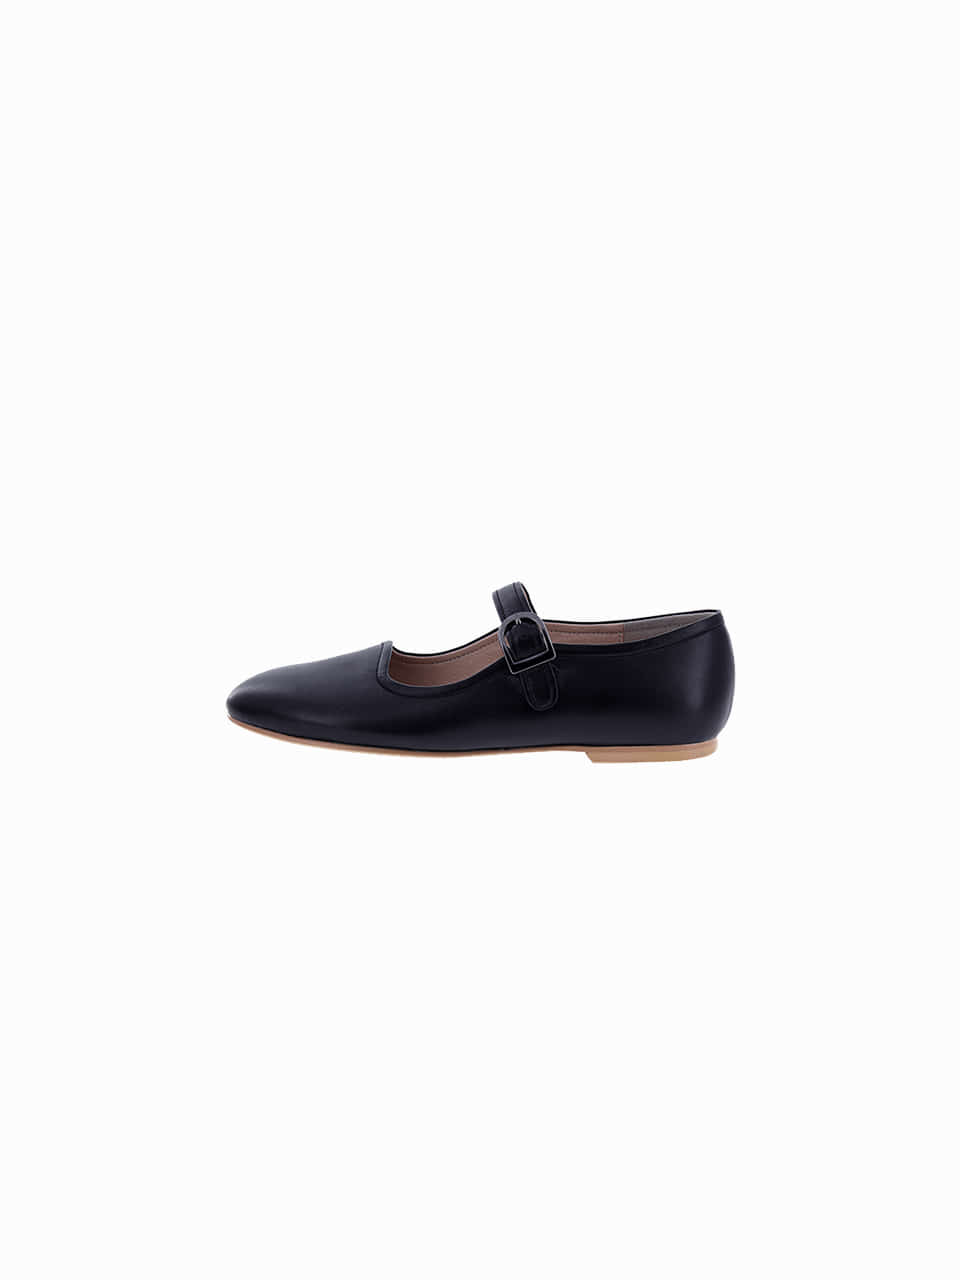 wave maryjane flat shoes_black_20504